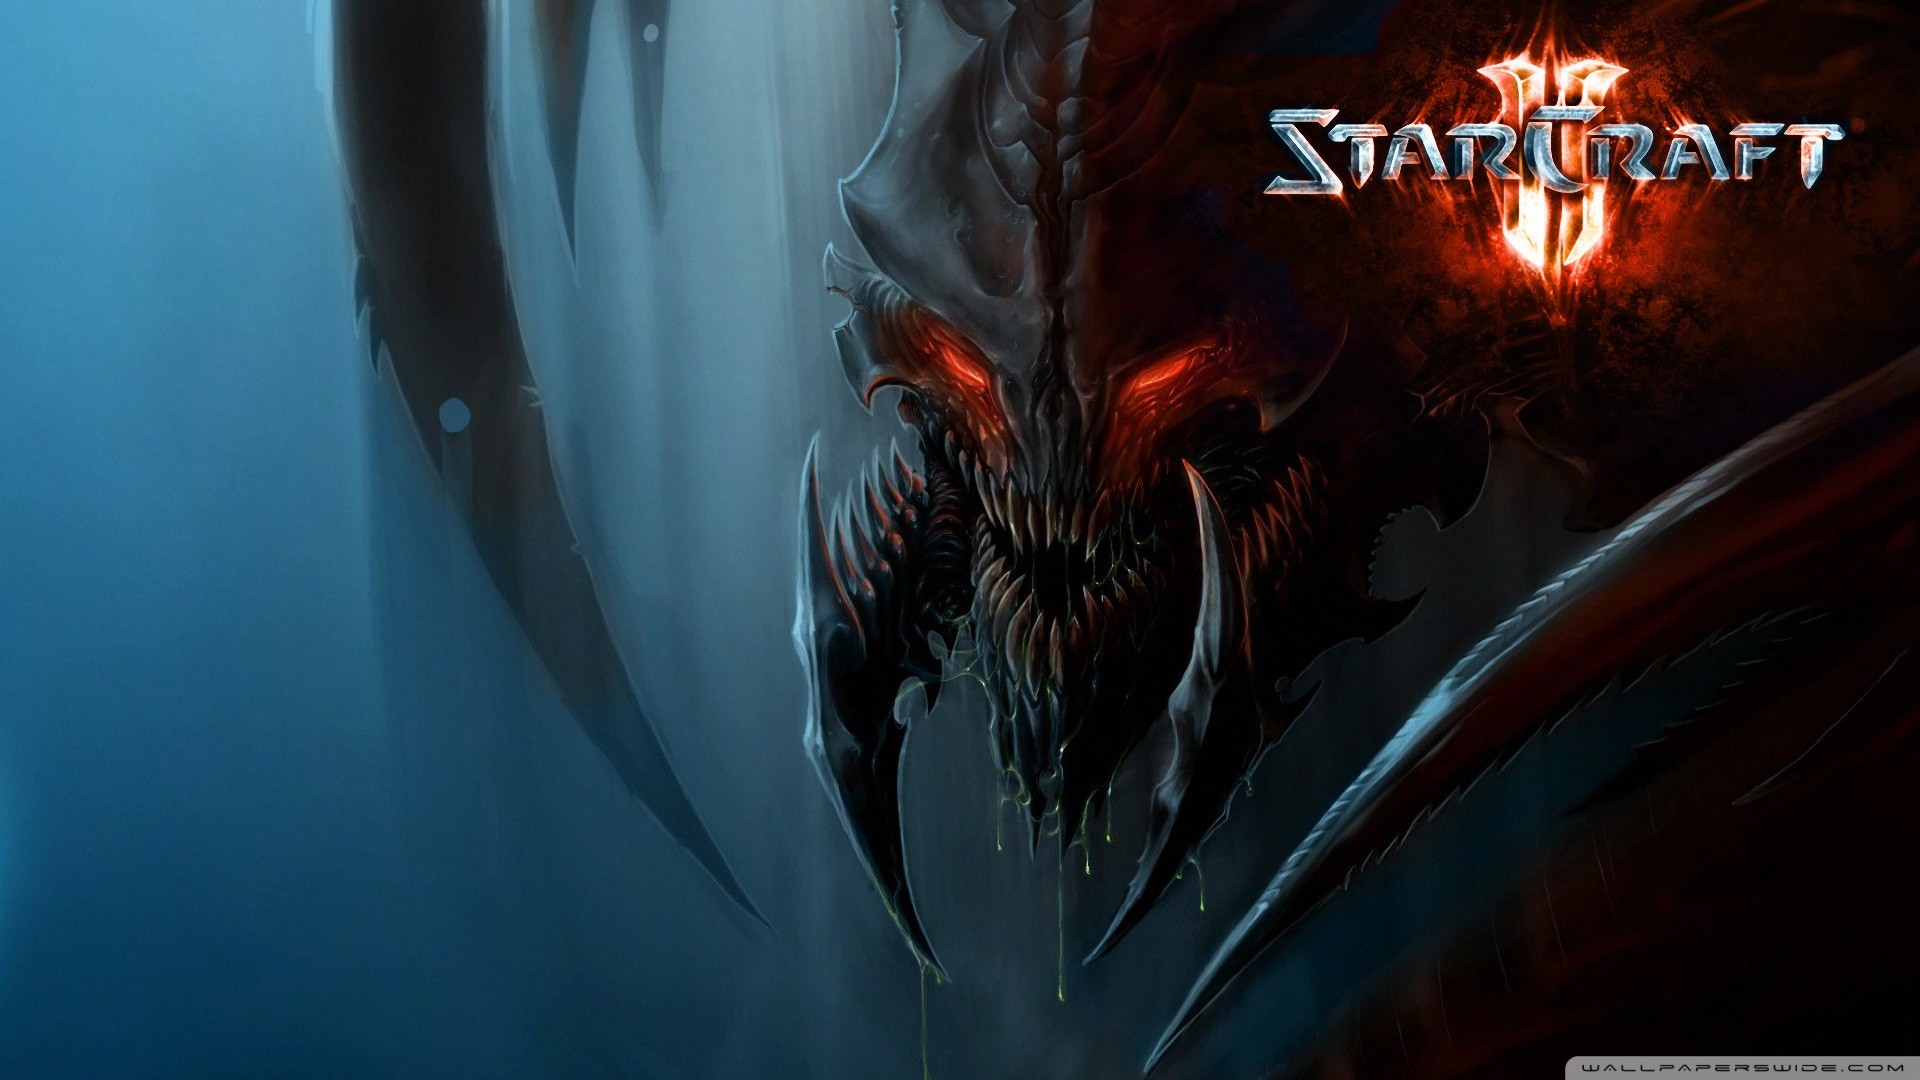 StarCraft 2 Zerg HD desktop wallpaper : Widescreen : High